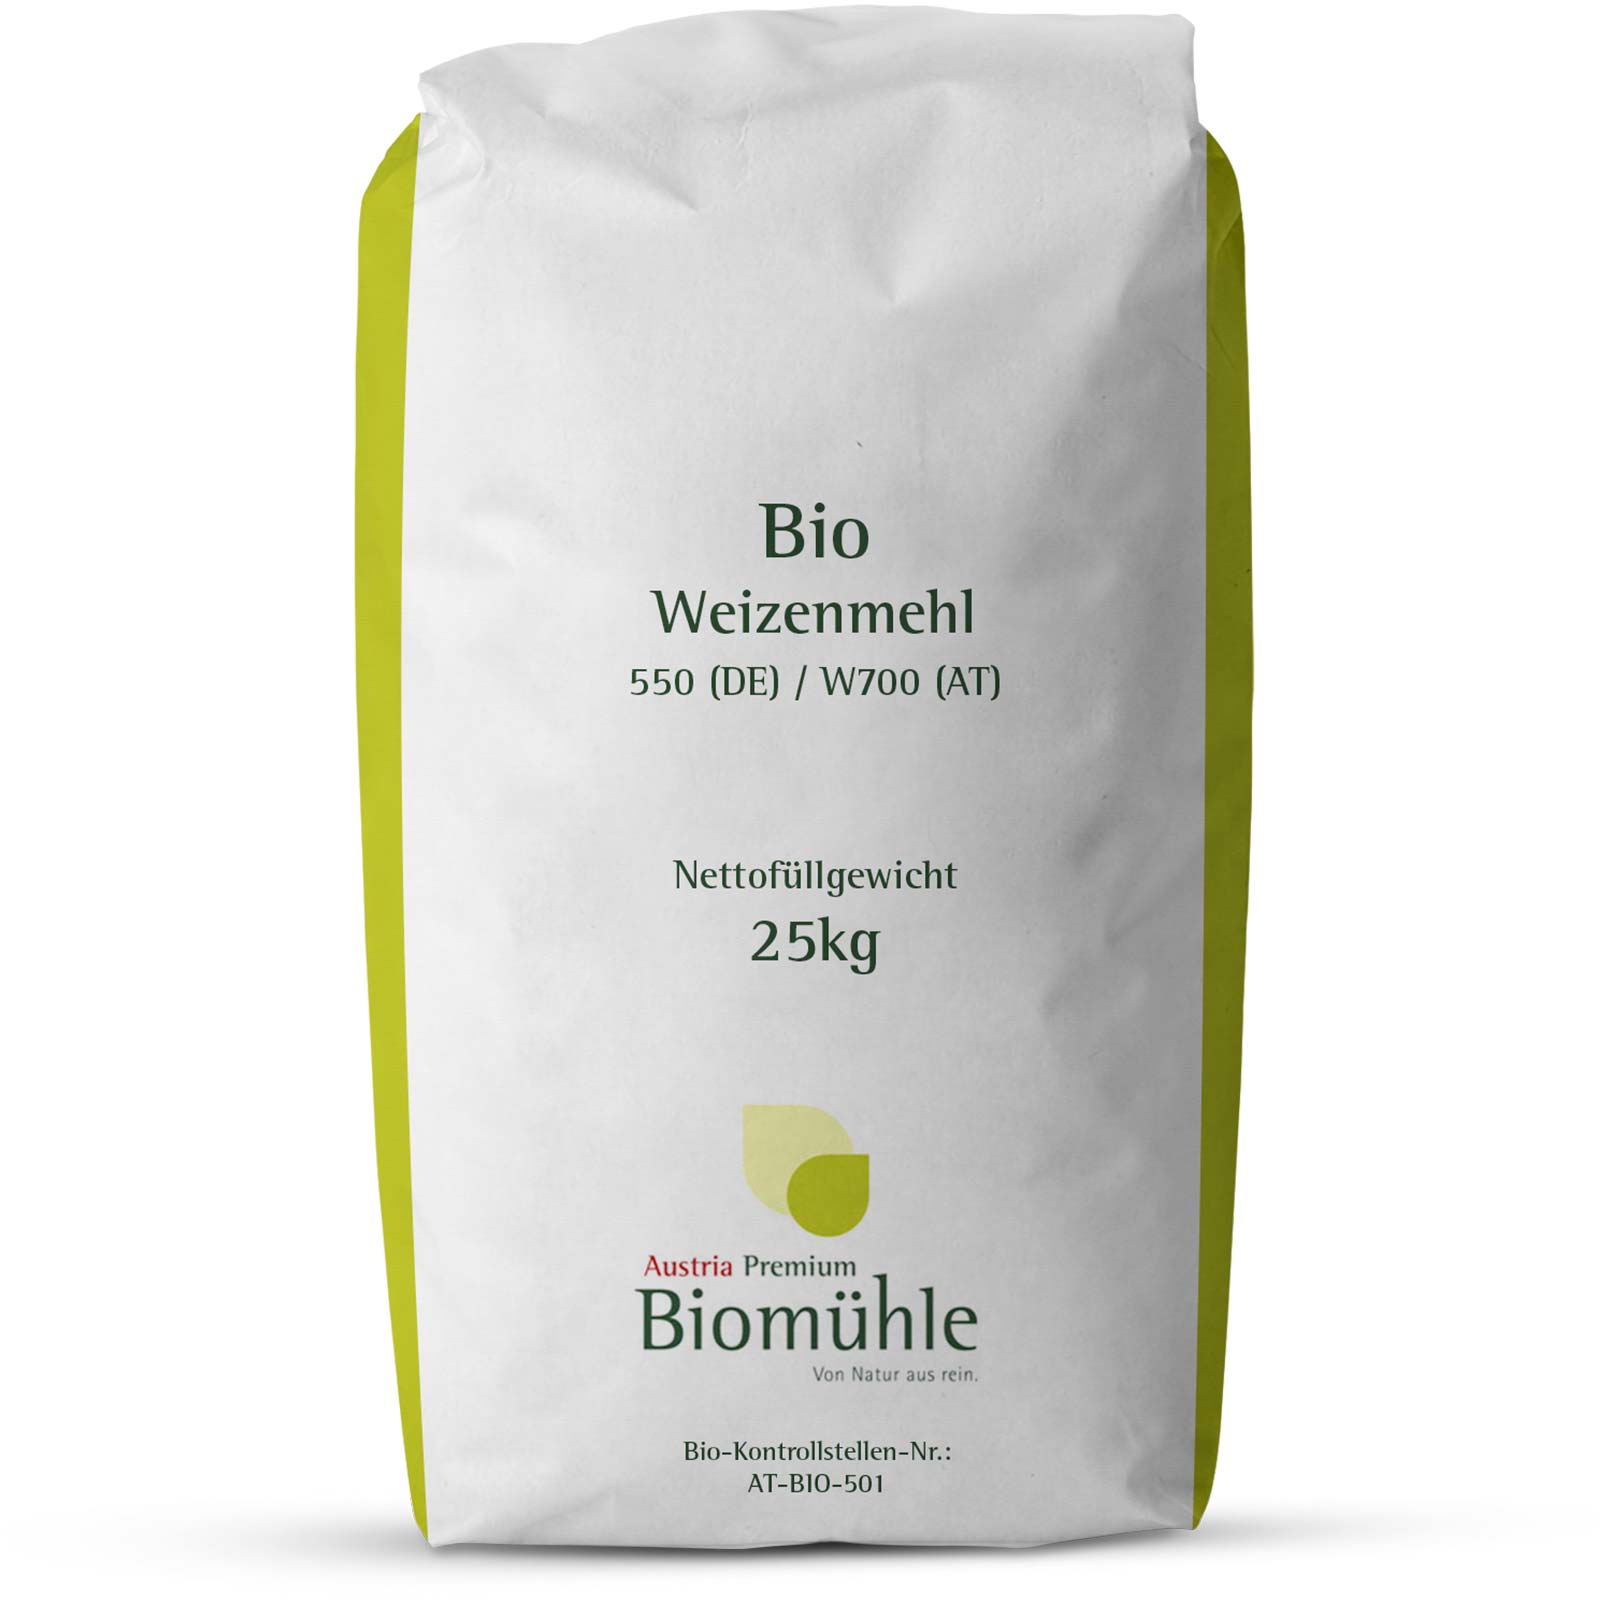 Farina di grano tenero tipo 0 Bio 25 kg (AT W700 / DE 550)